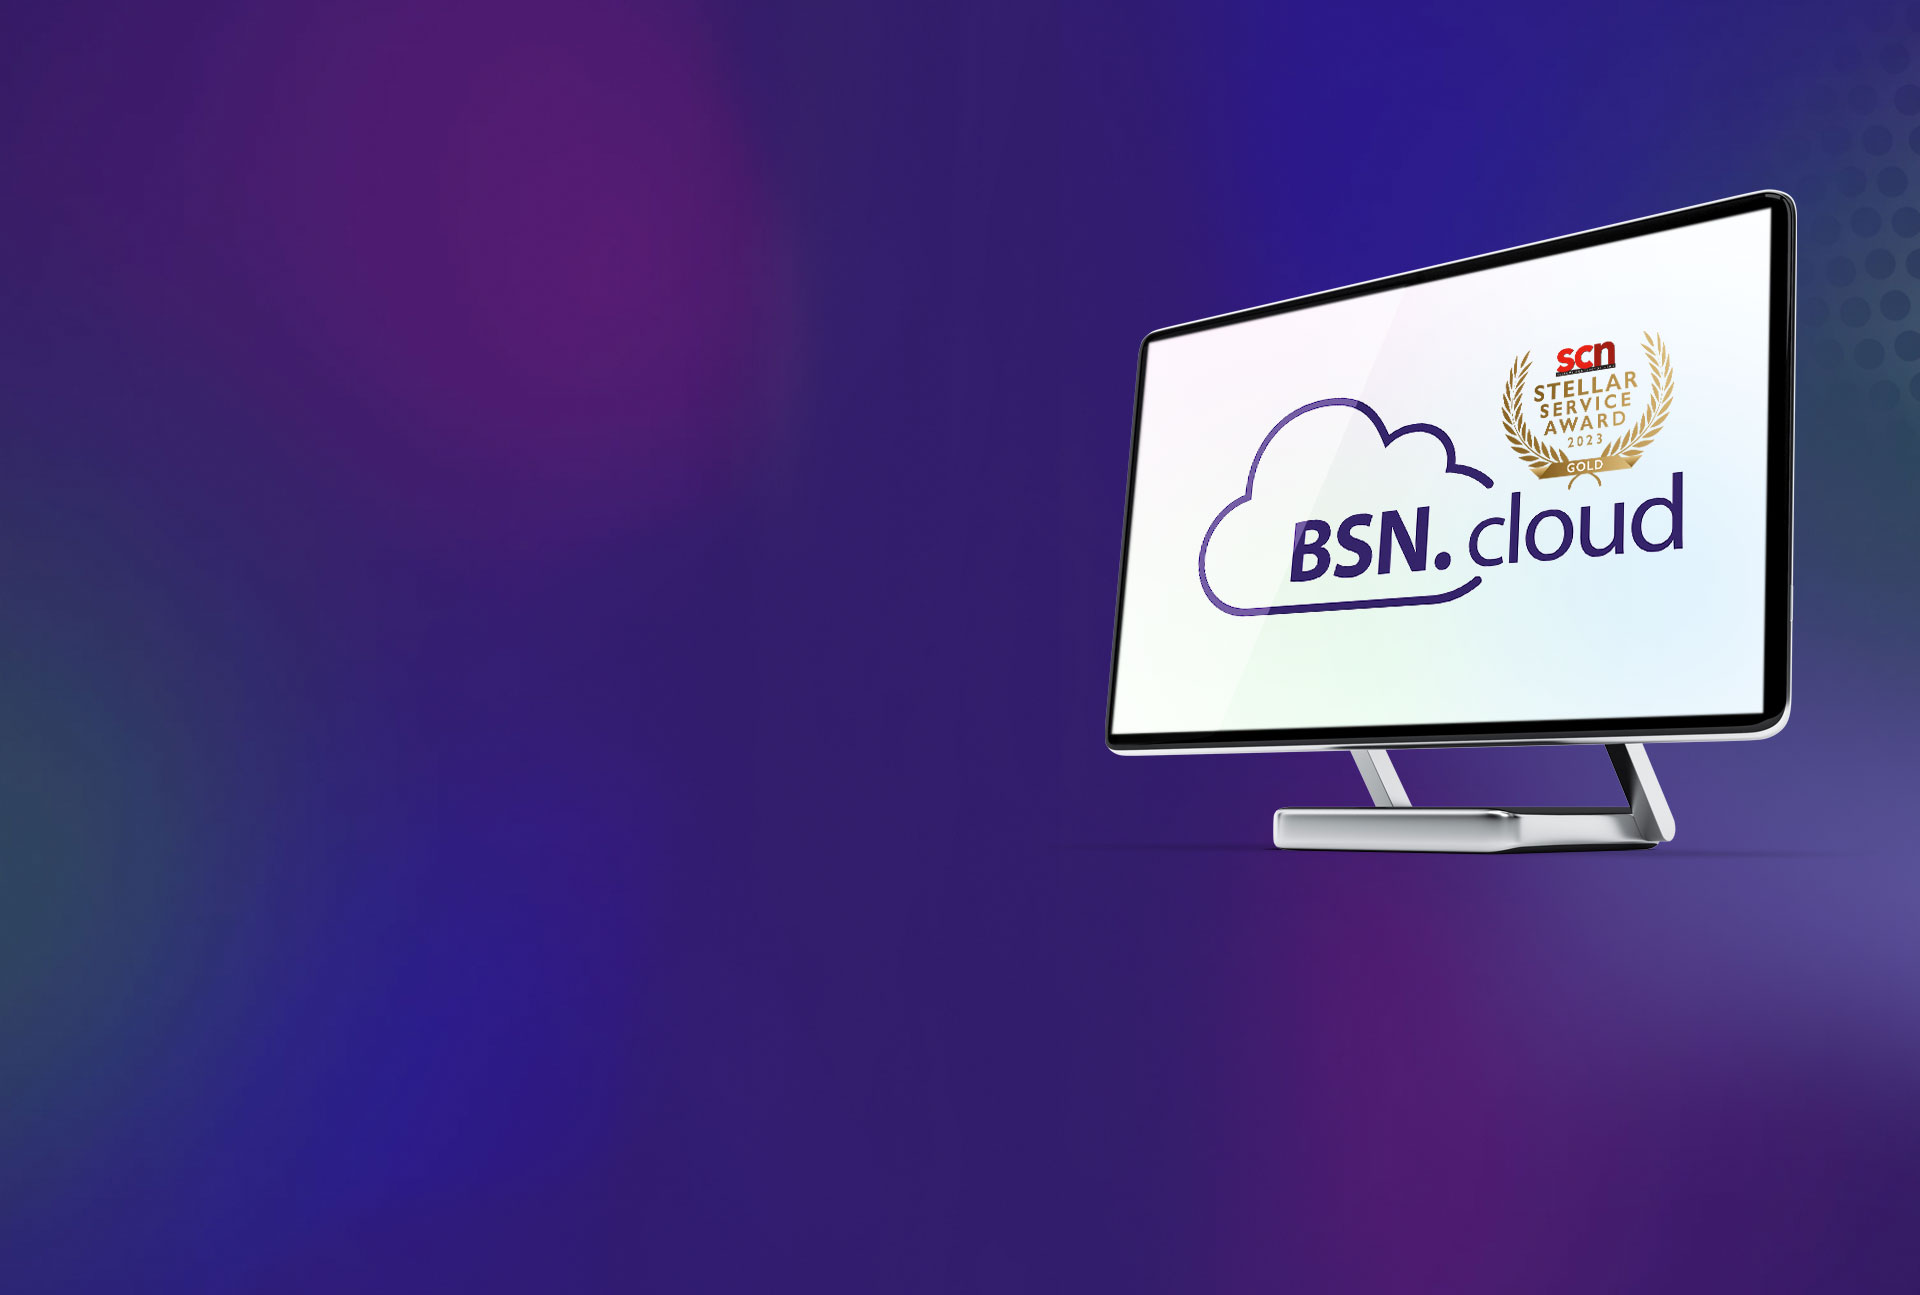 immagine eroica del monitor che visualizza il logo BSN.cloud